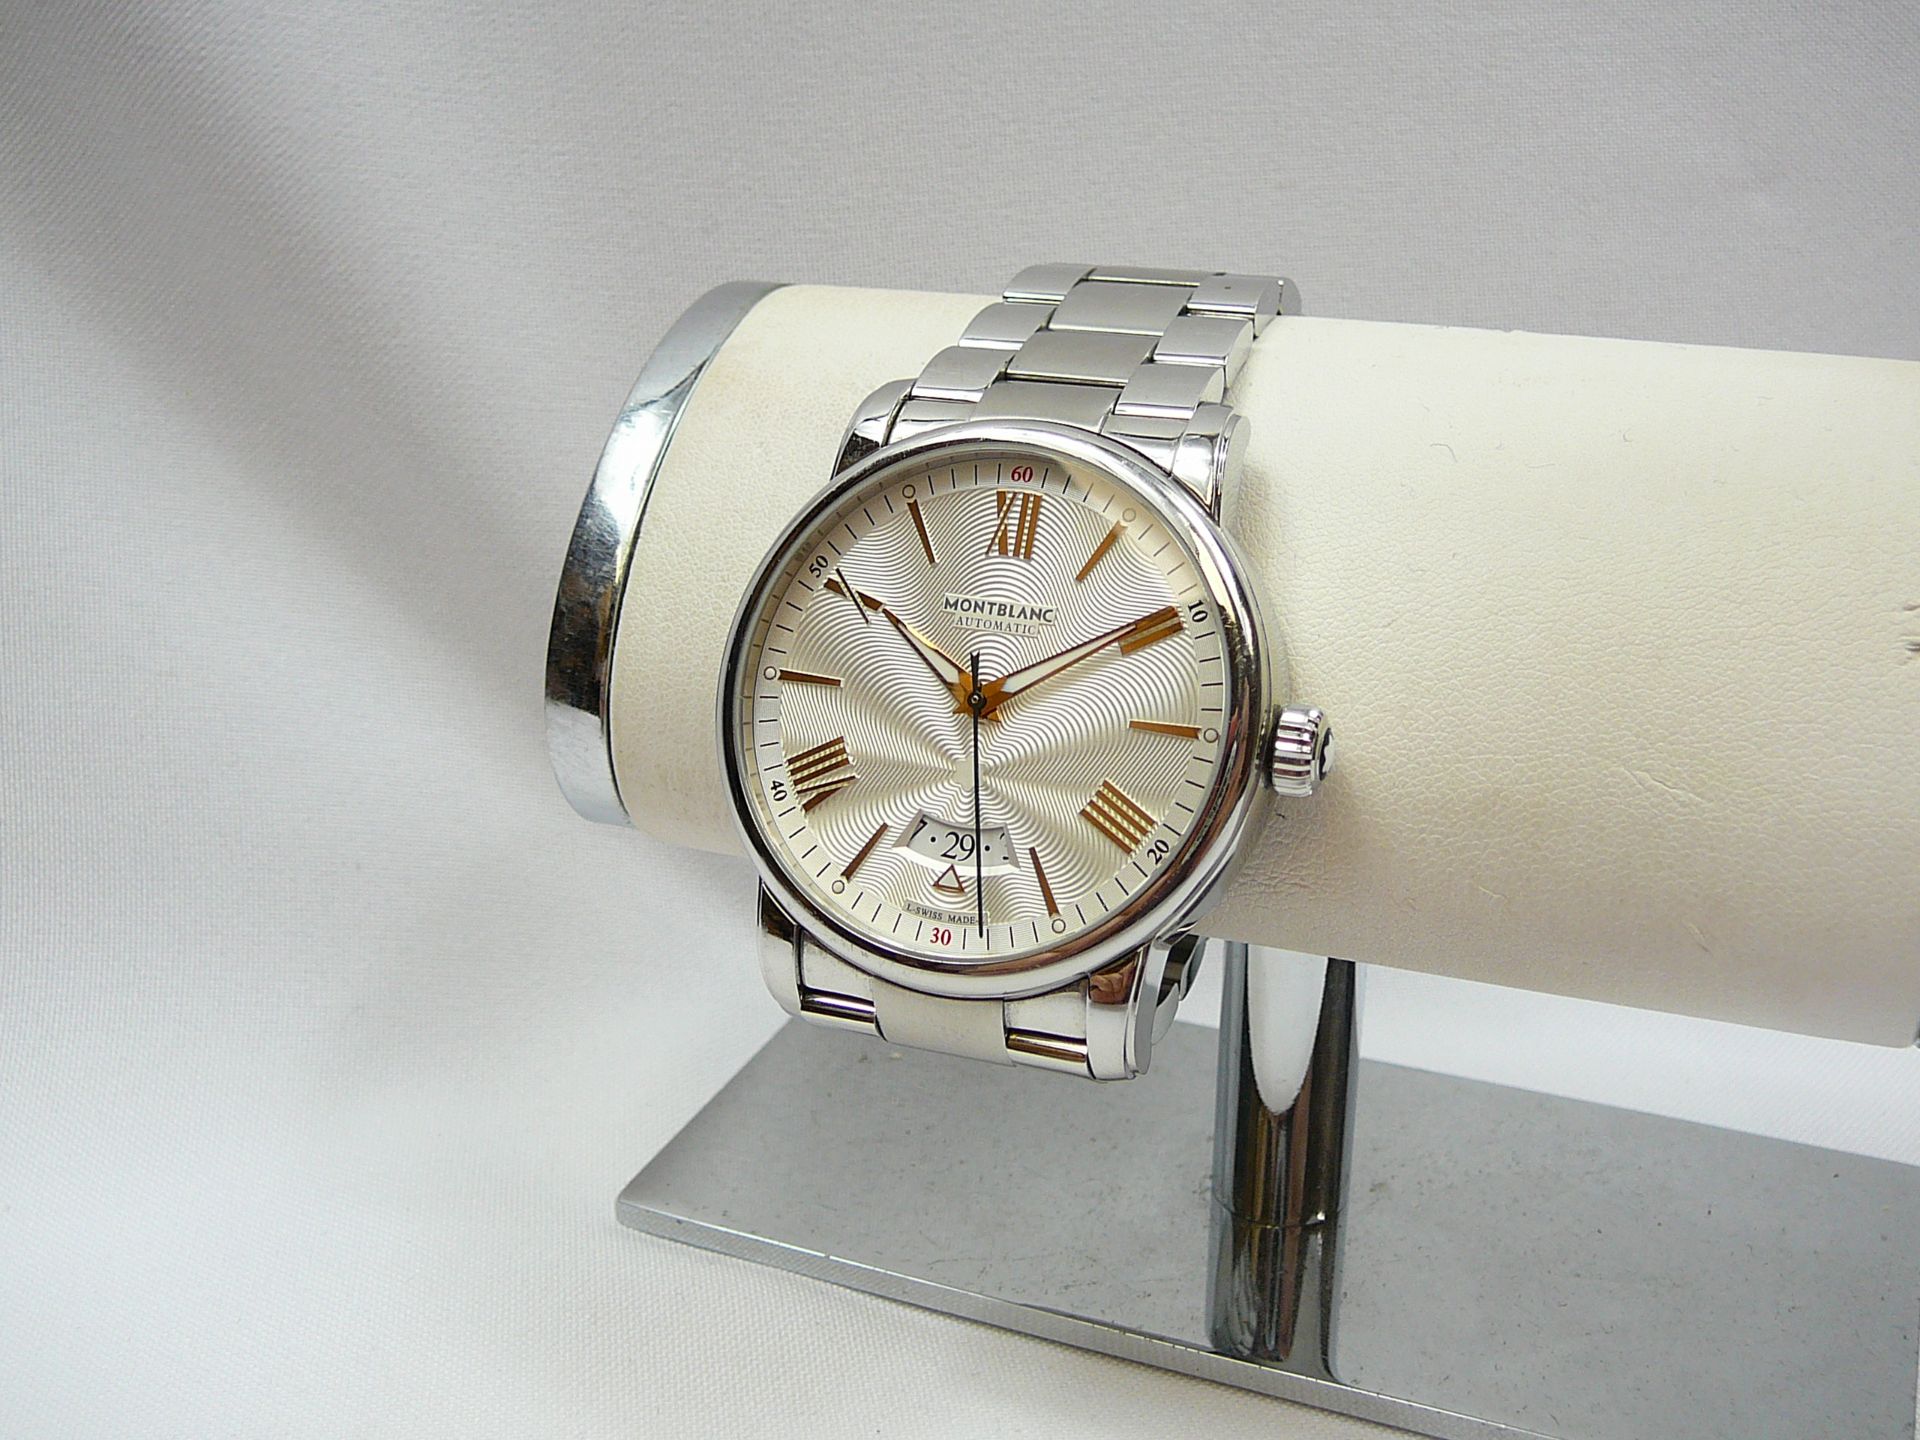 Gents Montblanc Wristwatch